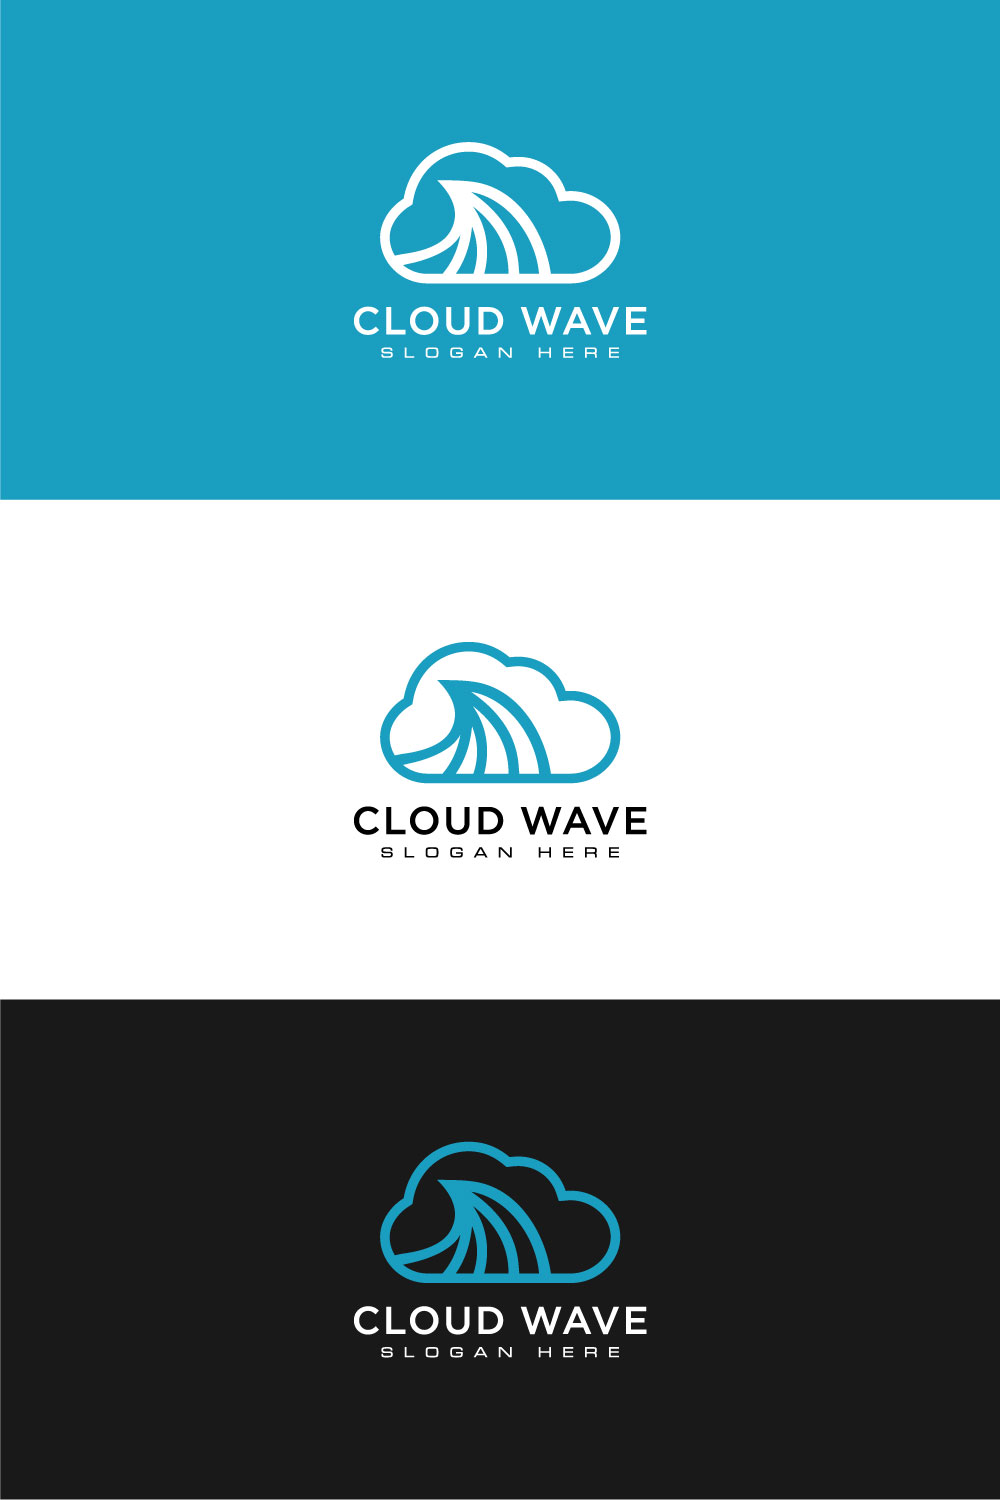 Cloud Wave Logo Vector Line Style pinterest.